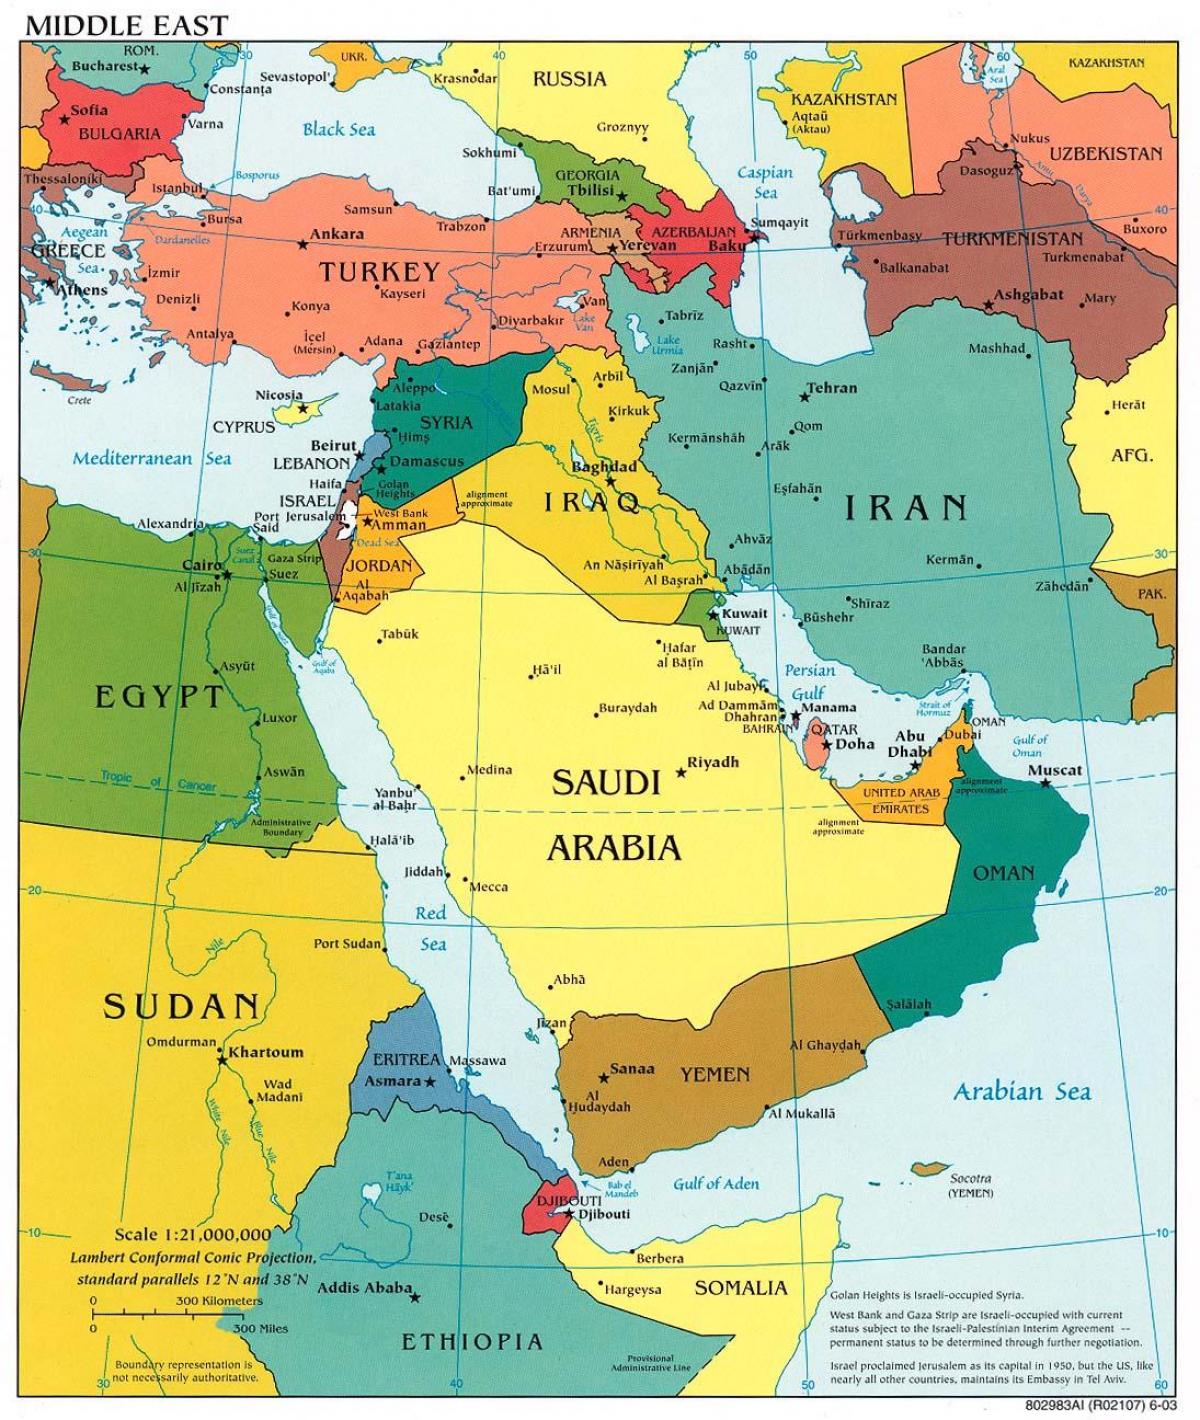 Бахрейн на Ближнем Востоке карте